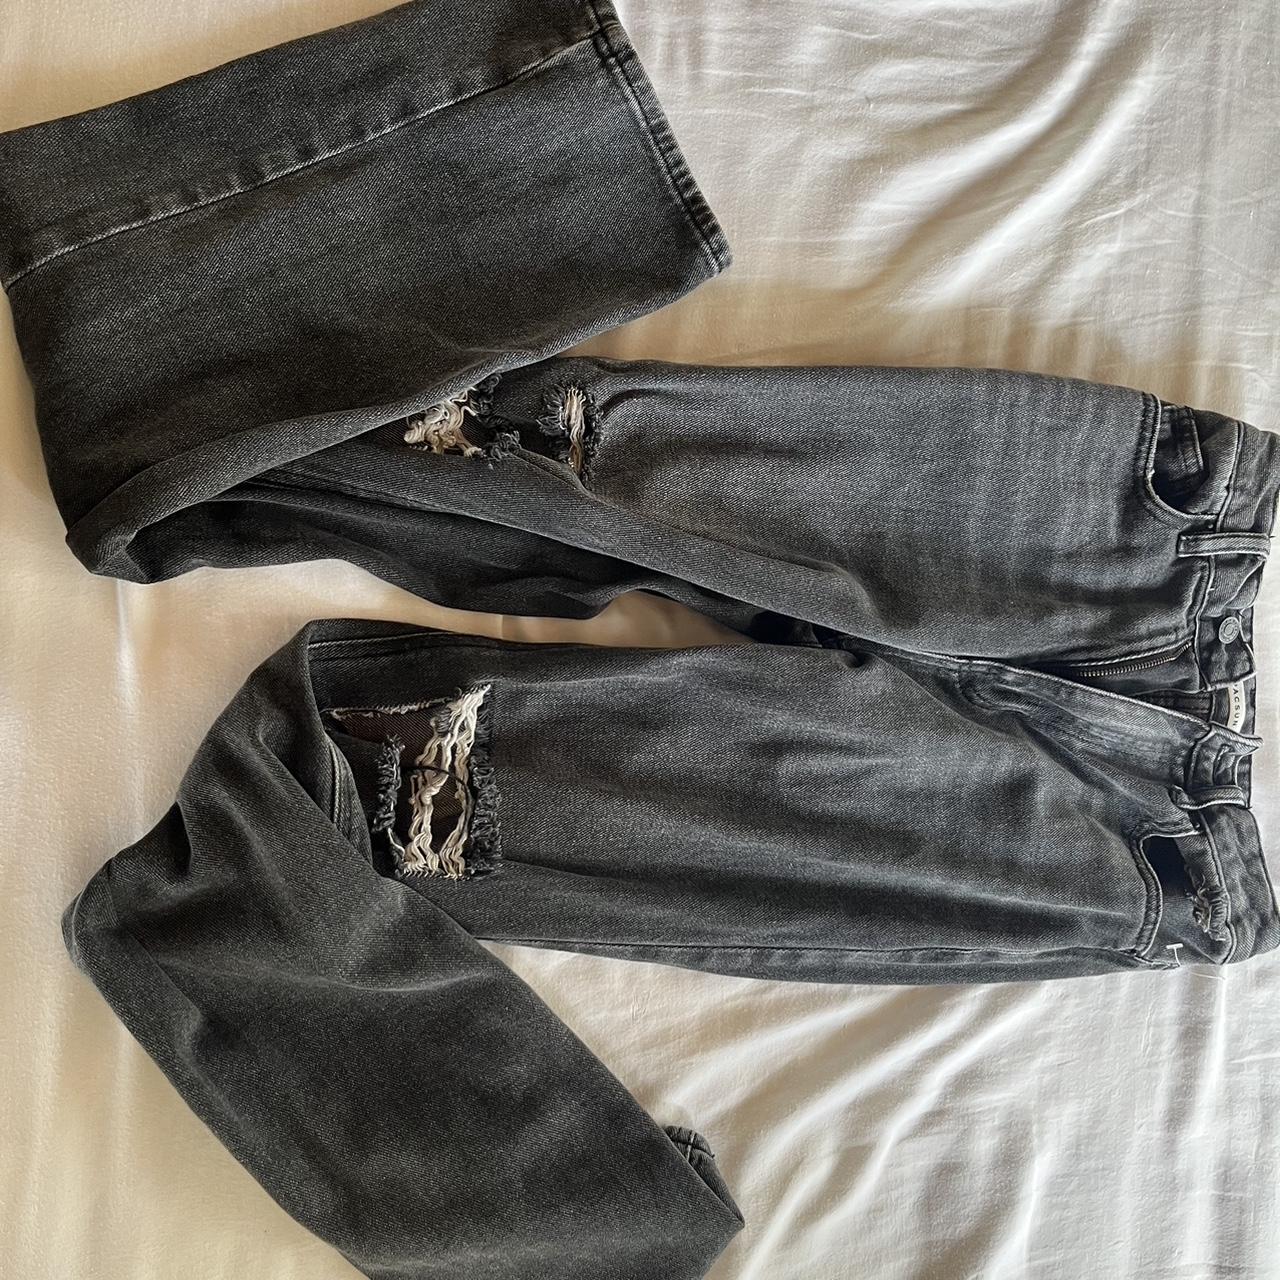 Pacsun baggy jeans - Depop